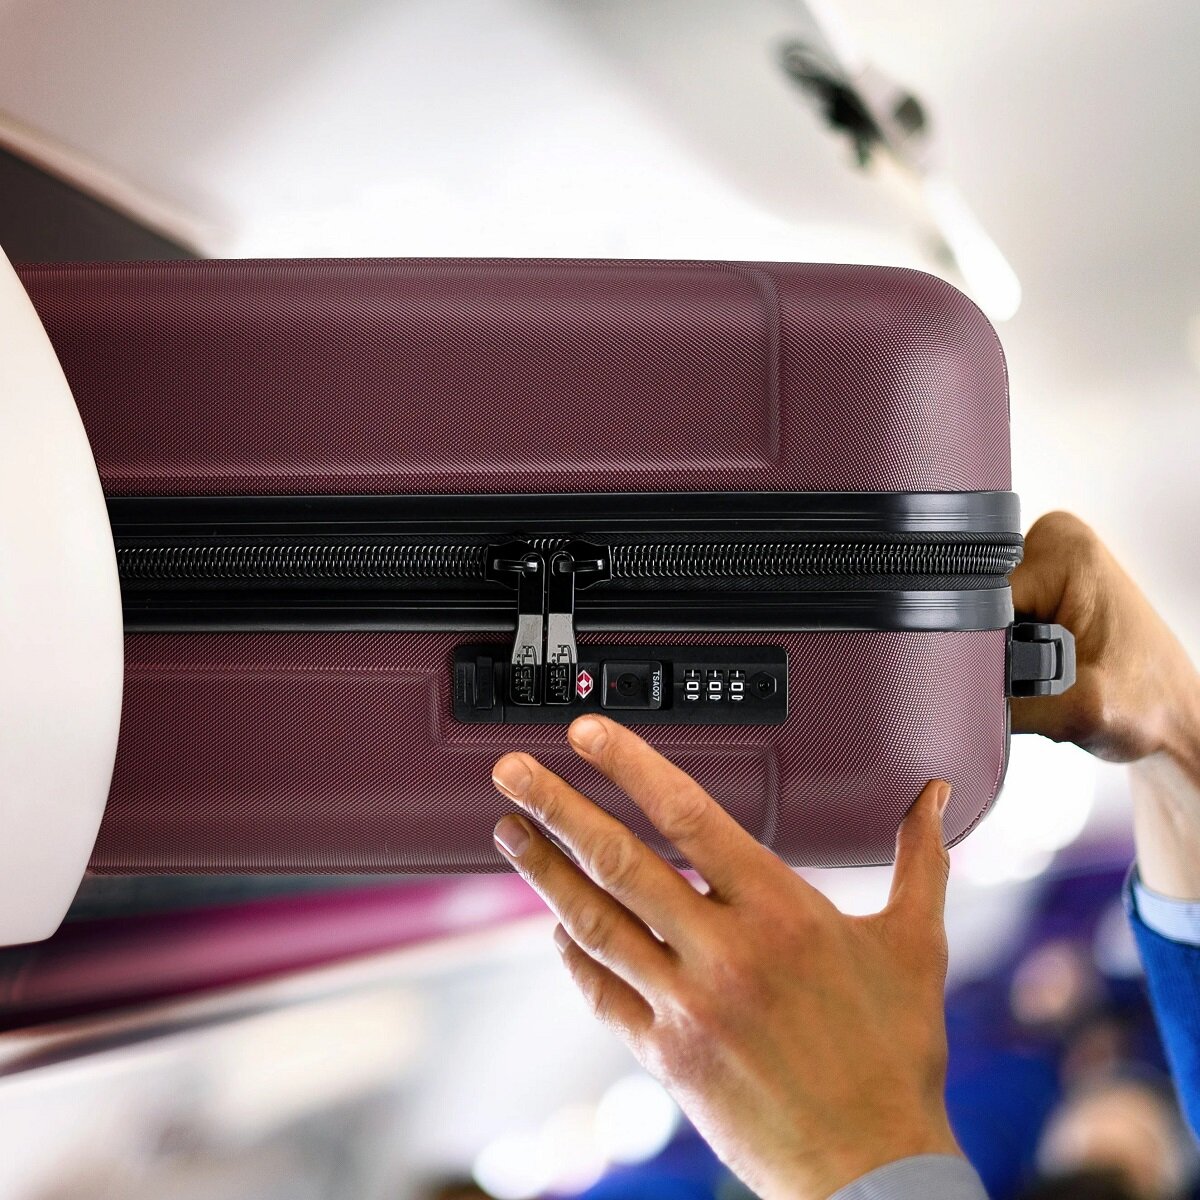 Walizka Anpa mała wkładanie walizki w kabinie samolotu w miejsce na bagaże nad fotelem